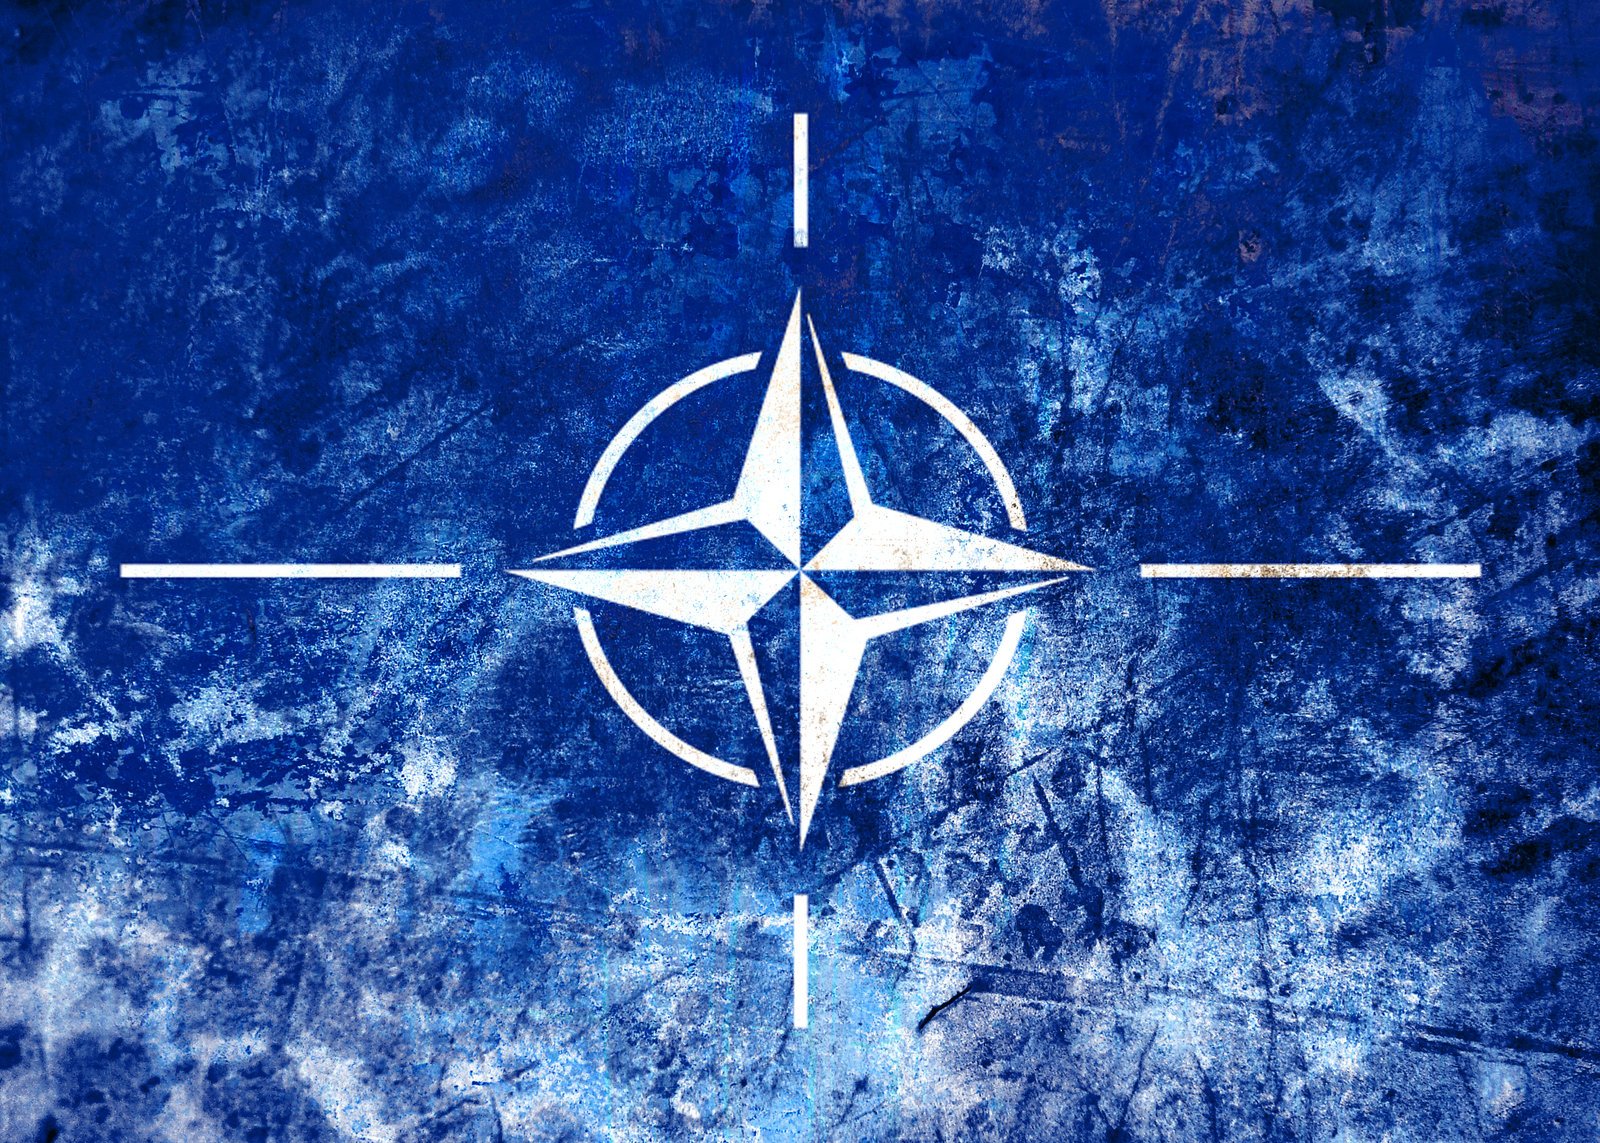 Нато тв. Флаг НАТО 1949. Североатлантический Альянс НАТО. Флаг Североатлантического Альянса. NATO (North Atlantic Treaty Organization) - Североатлантический военный Альянс (НАТО)..